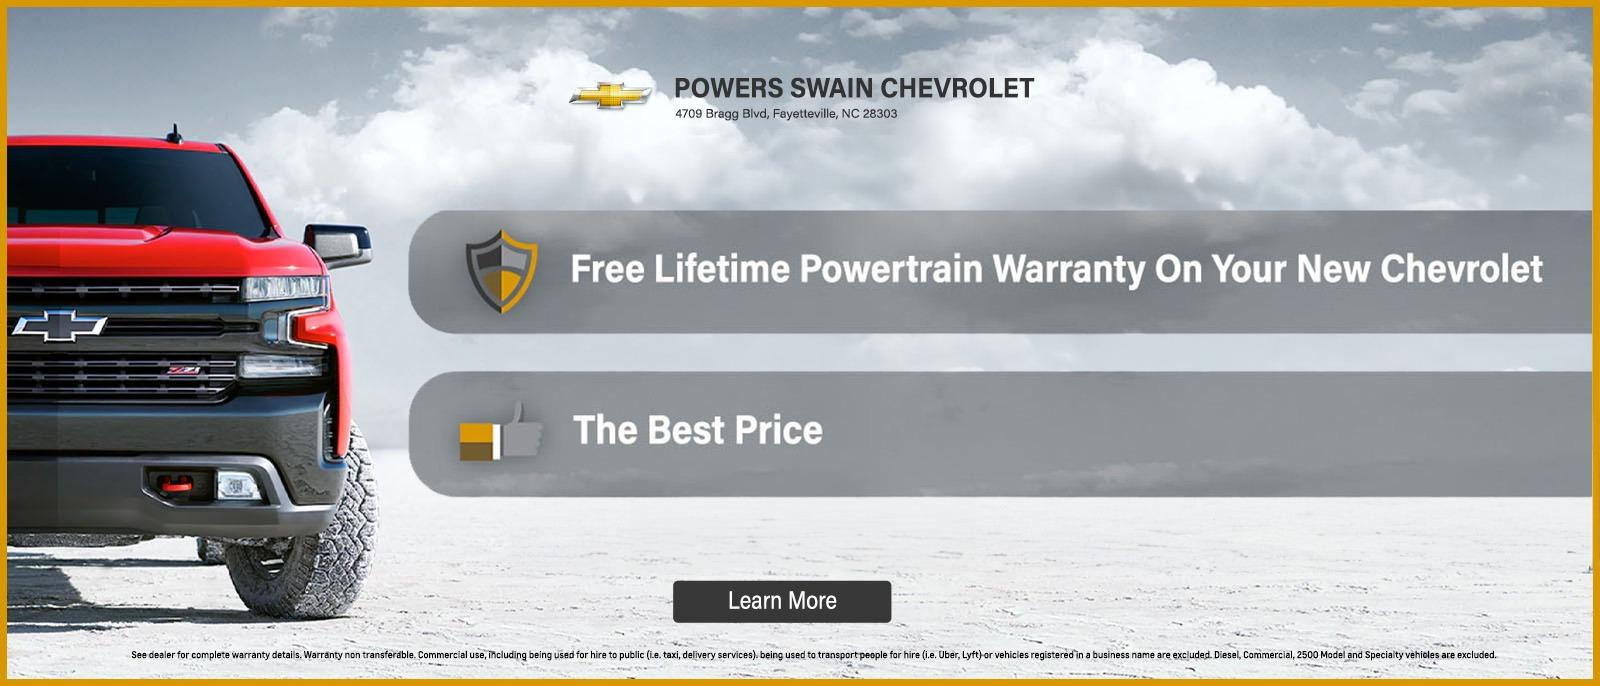 Power Swain Chevrolet